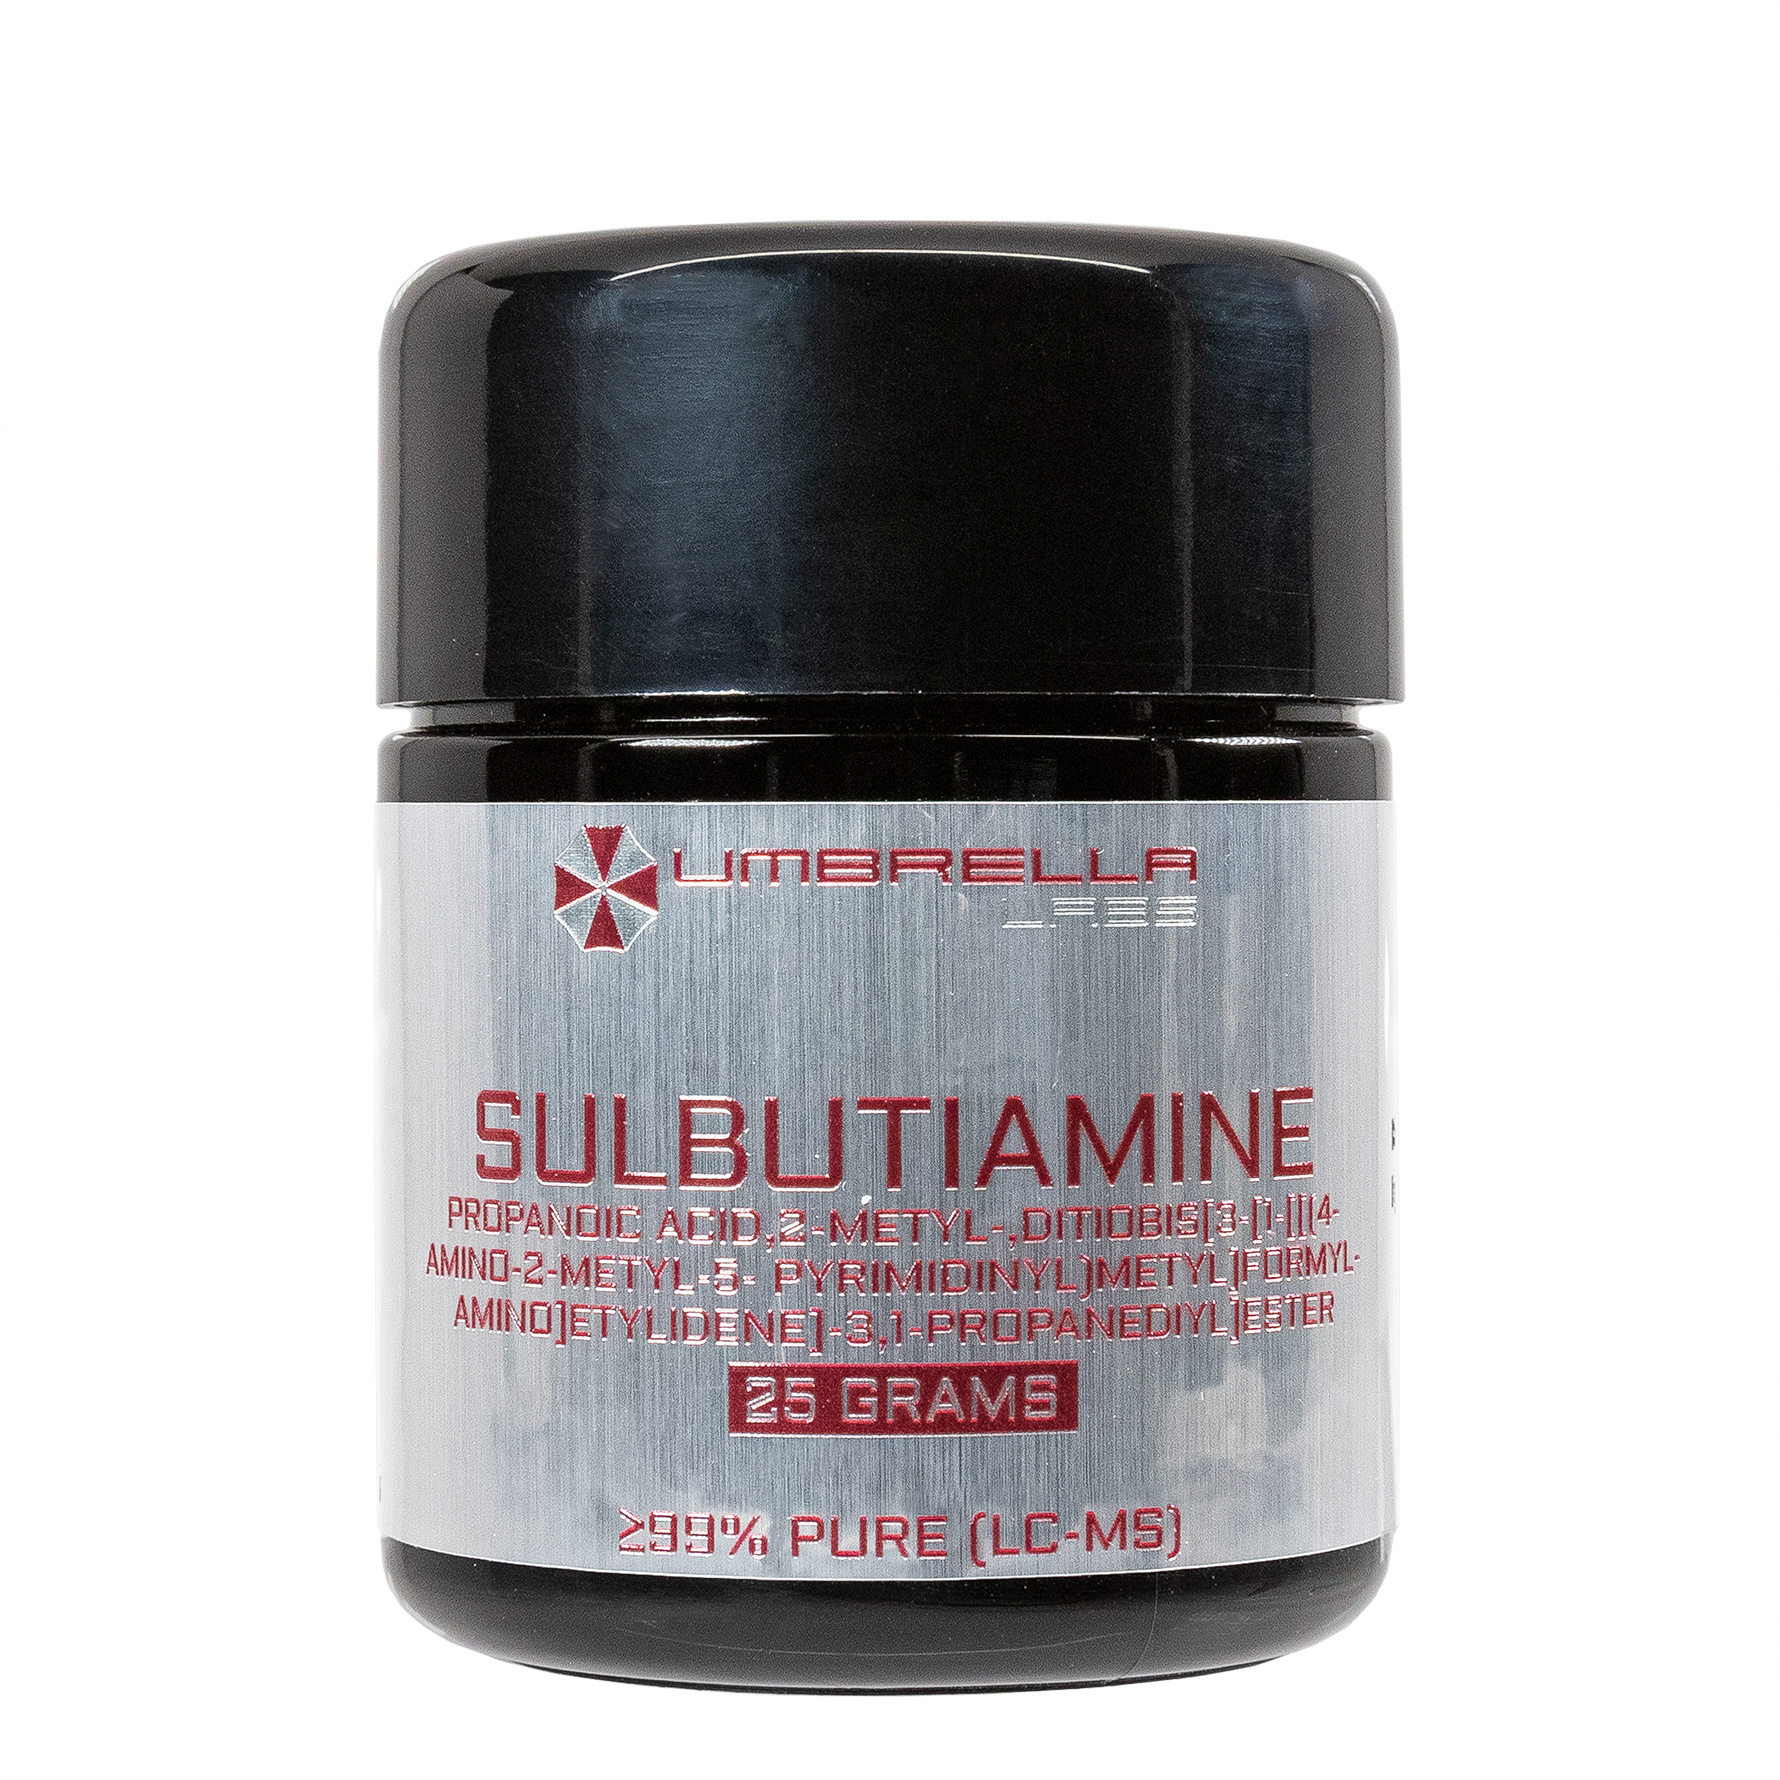 Pure Sulbutiamine For Sale